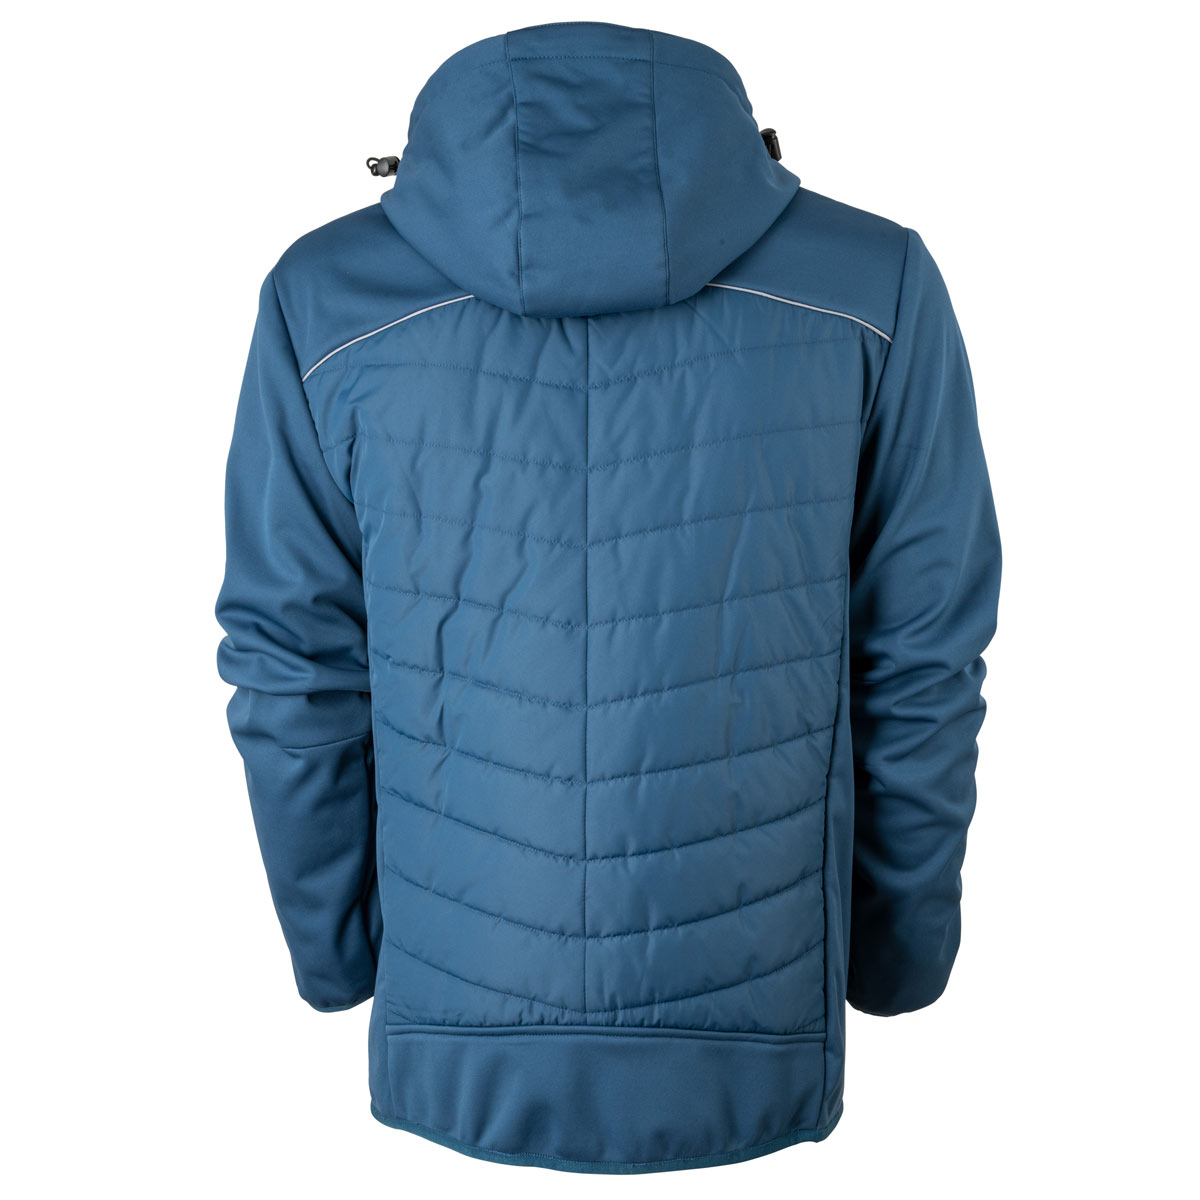 FORSBERG Alruut III hybrid jacket with detachable hood